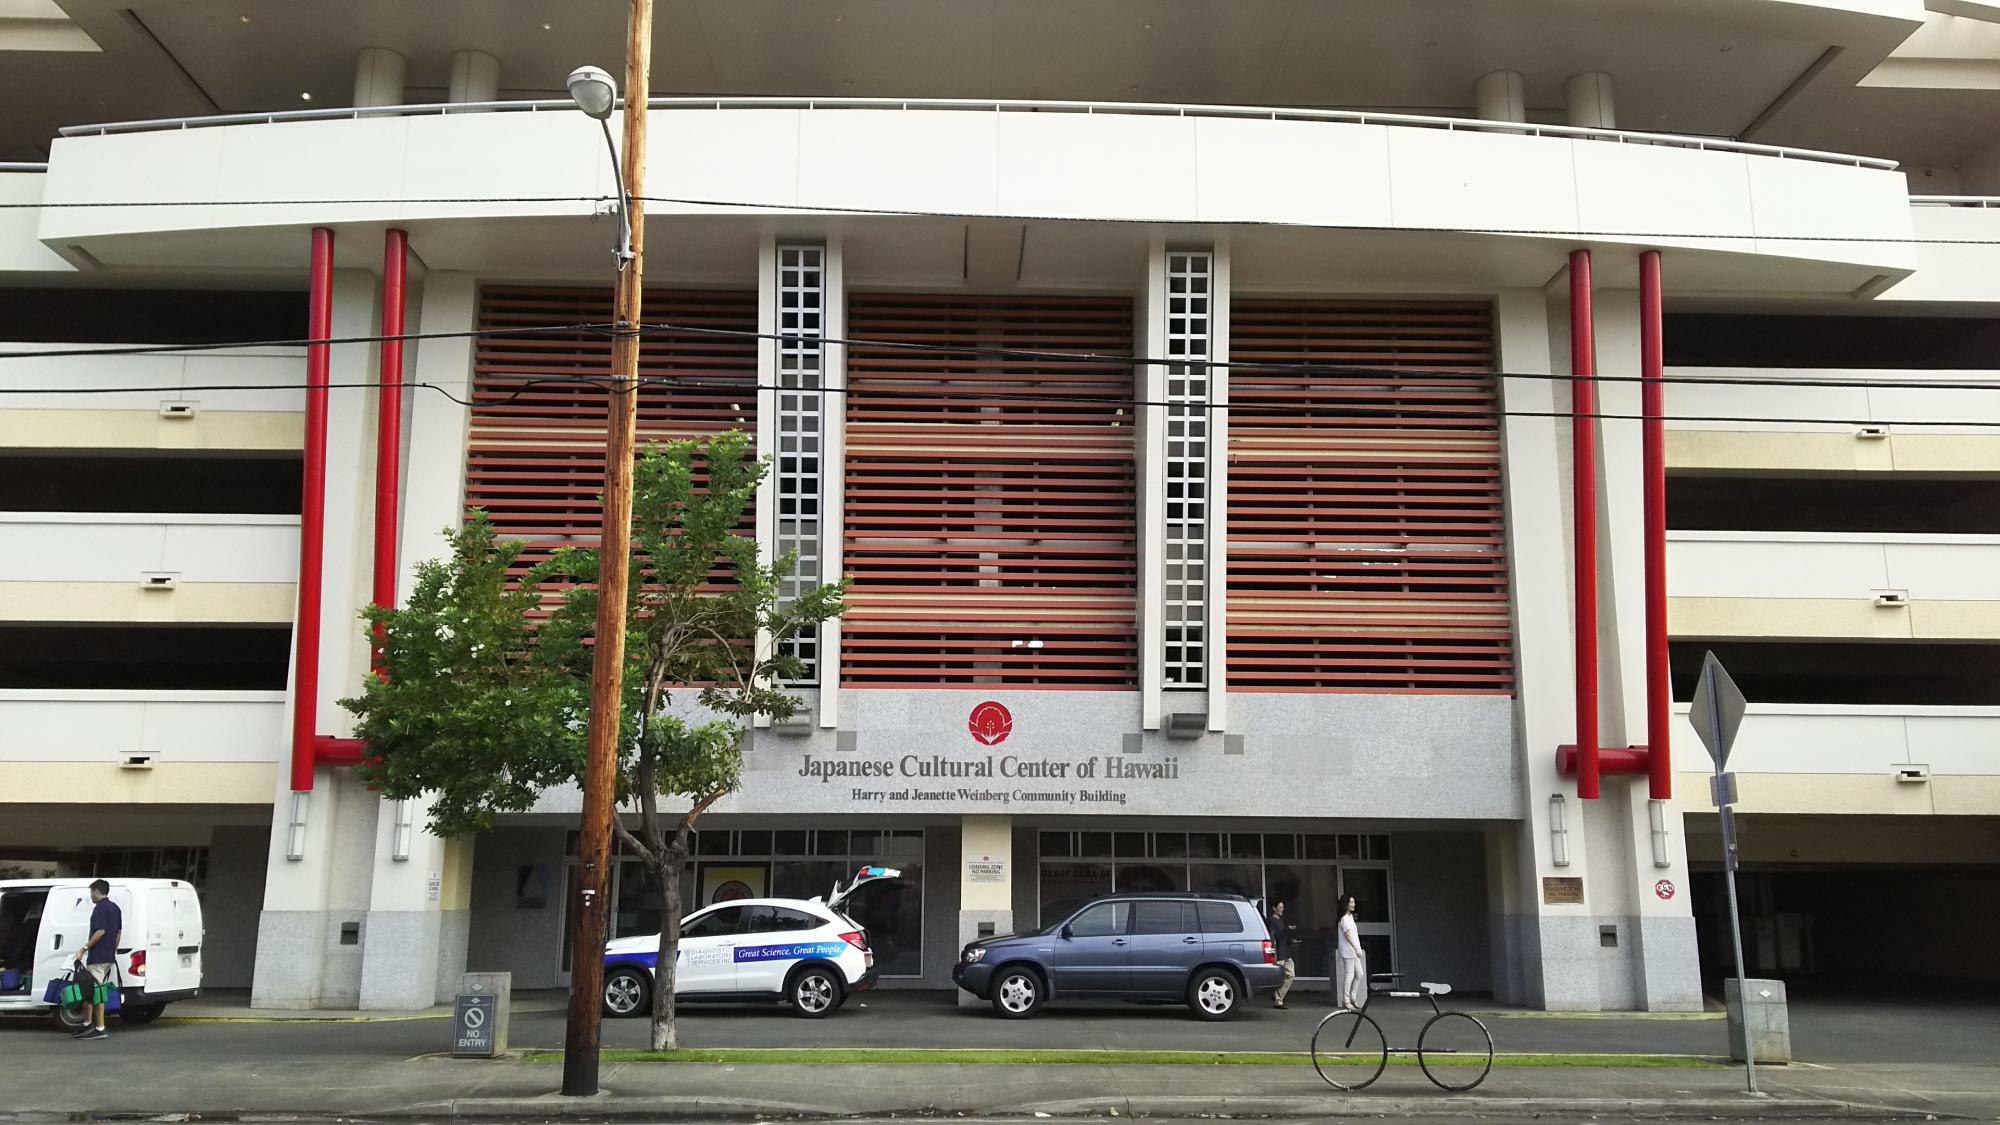 ハワイ日系人の歴史を学ぶことが出来る「ハワイ日本文化センター」では、日本産変身ヒーローであるキカイダーの催事も開催されていた（2017年筆者撮影）。